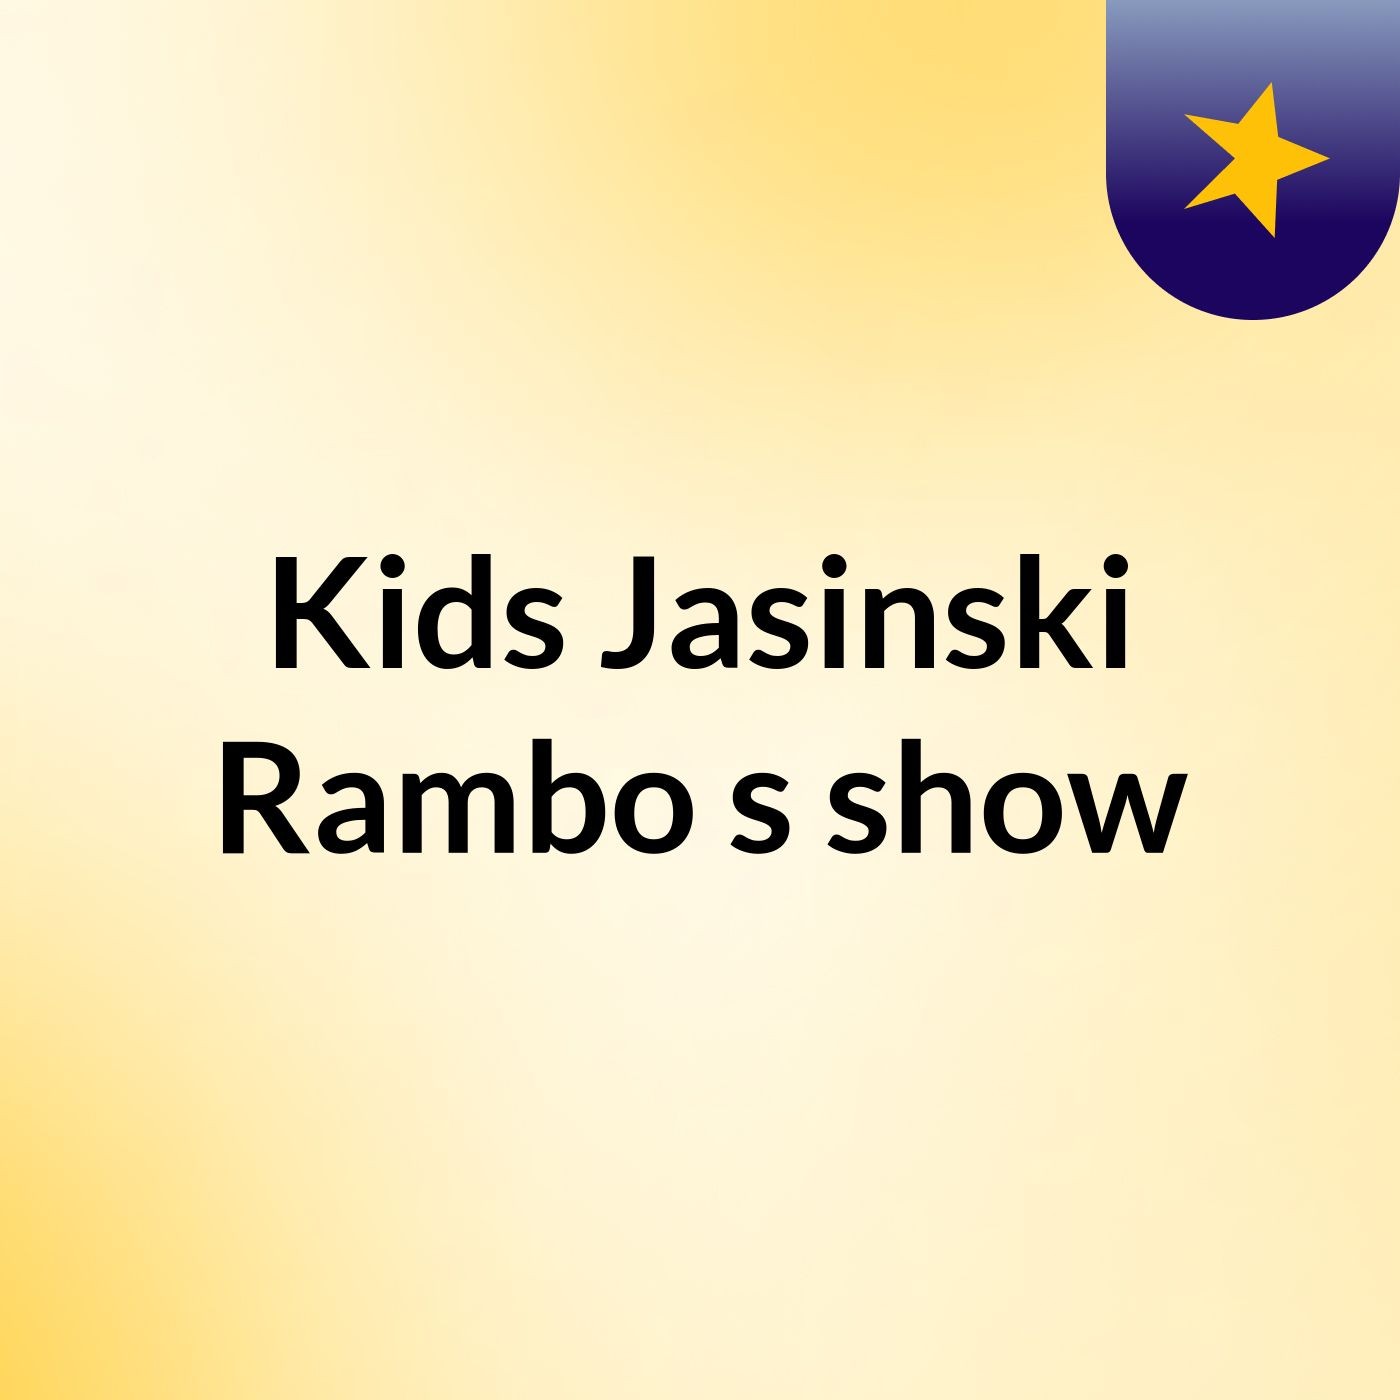 Kids Jasinski Rambo's show